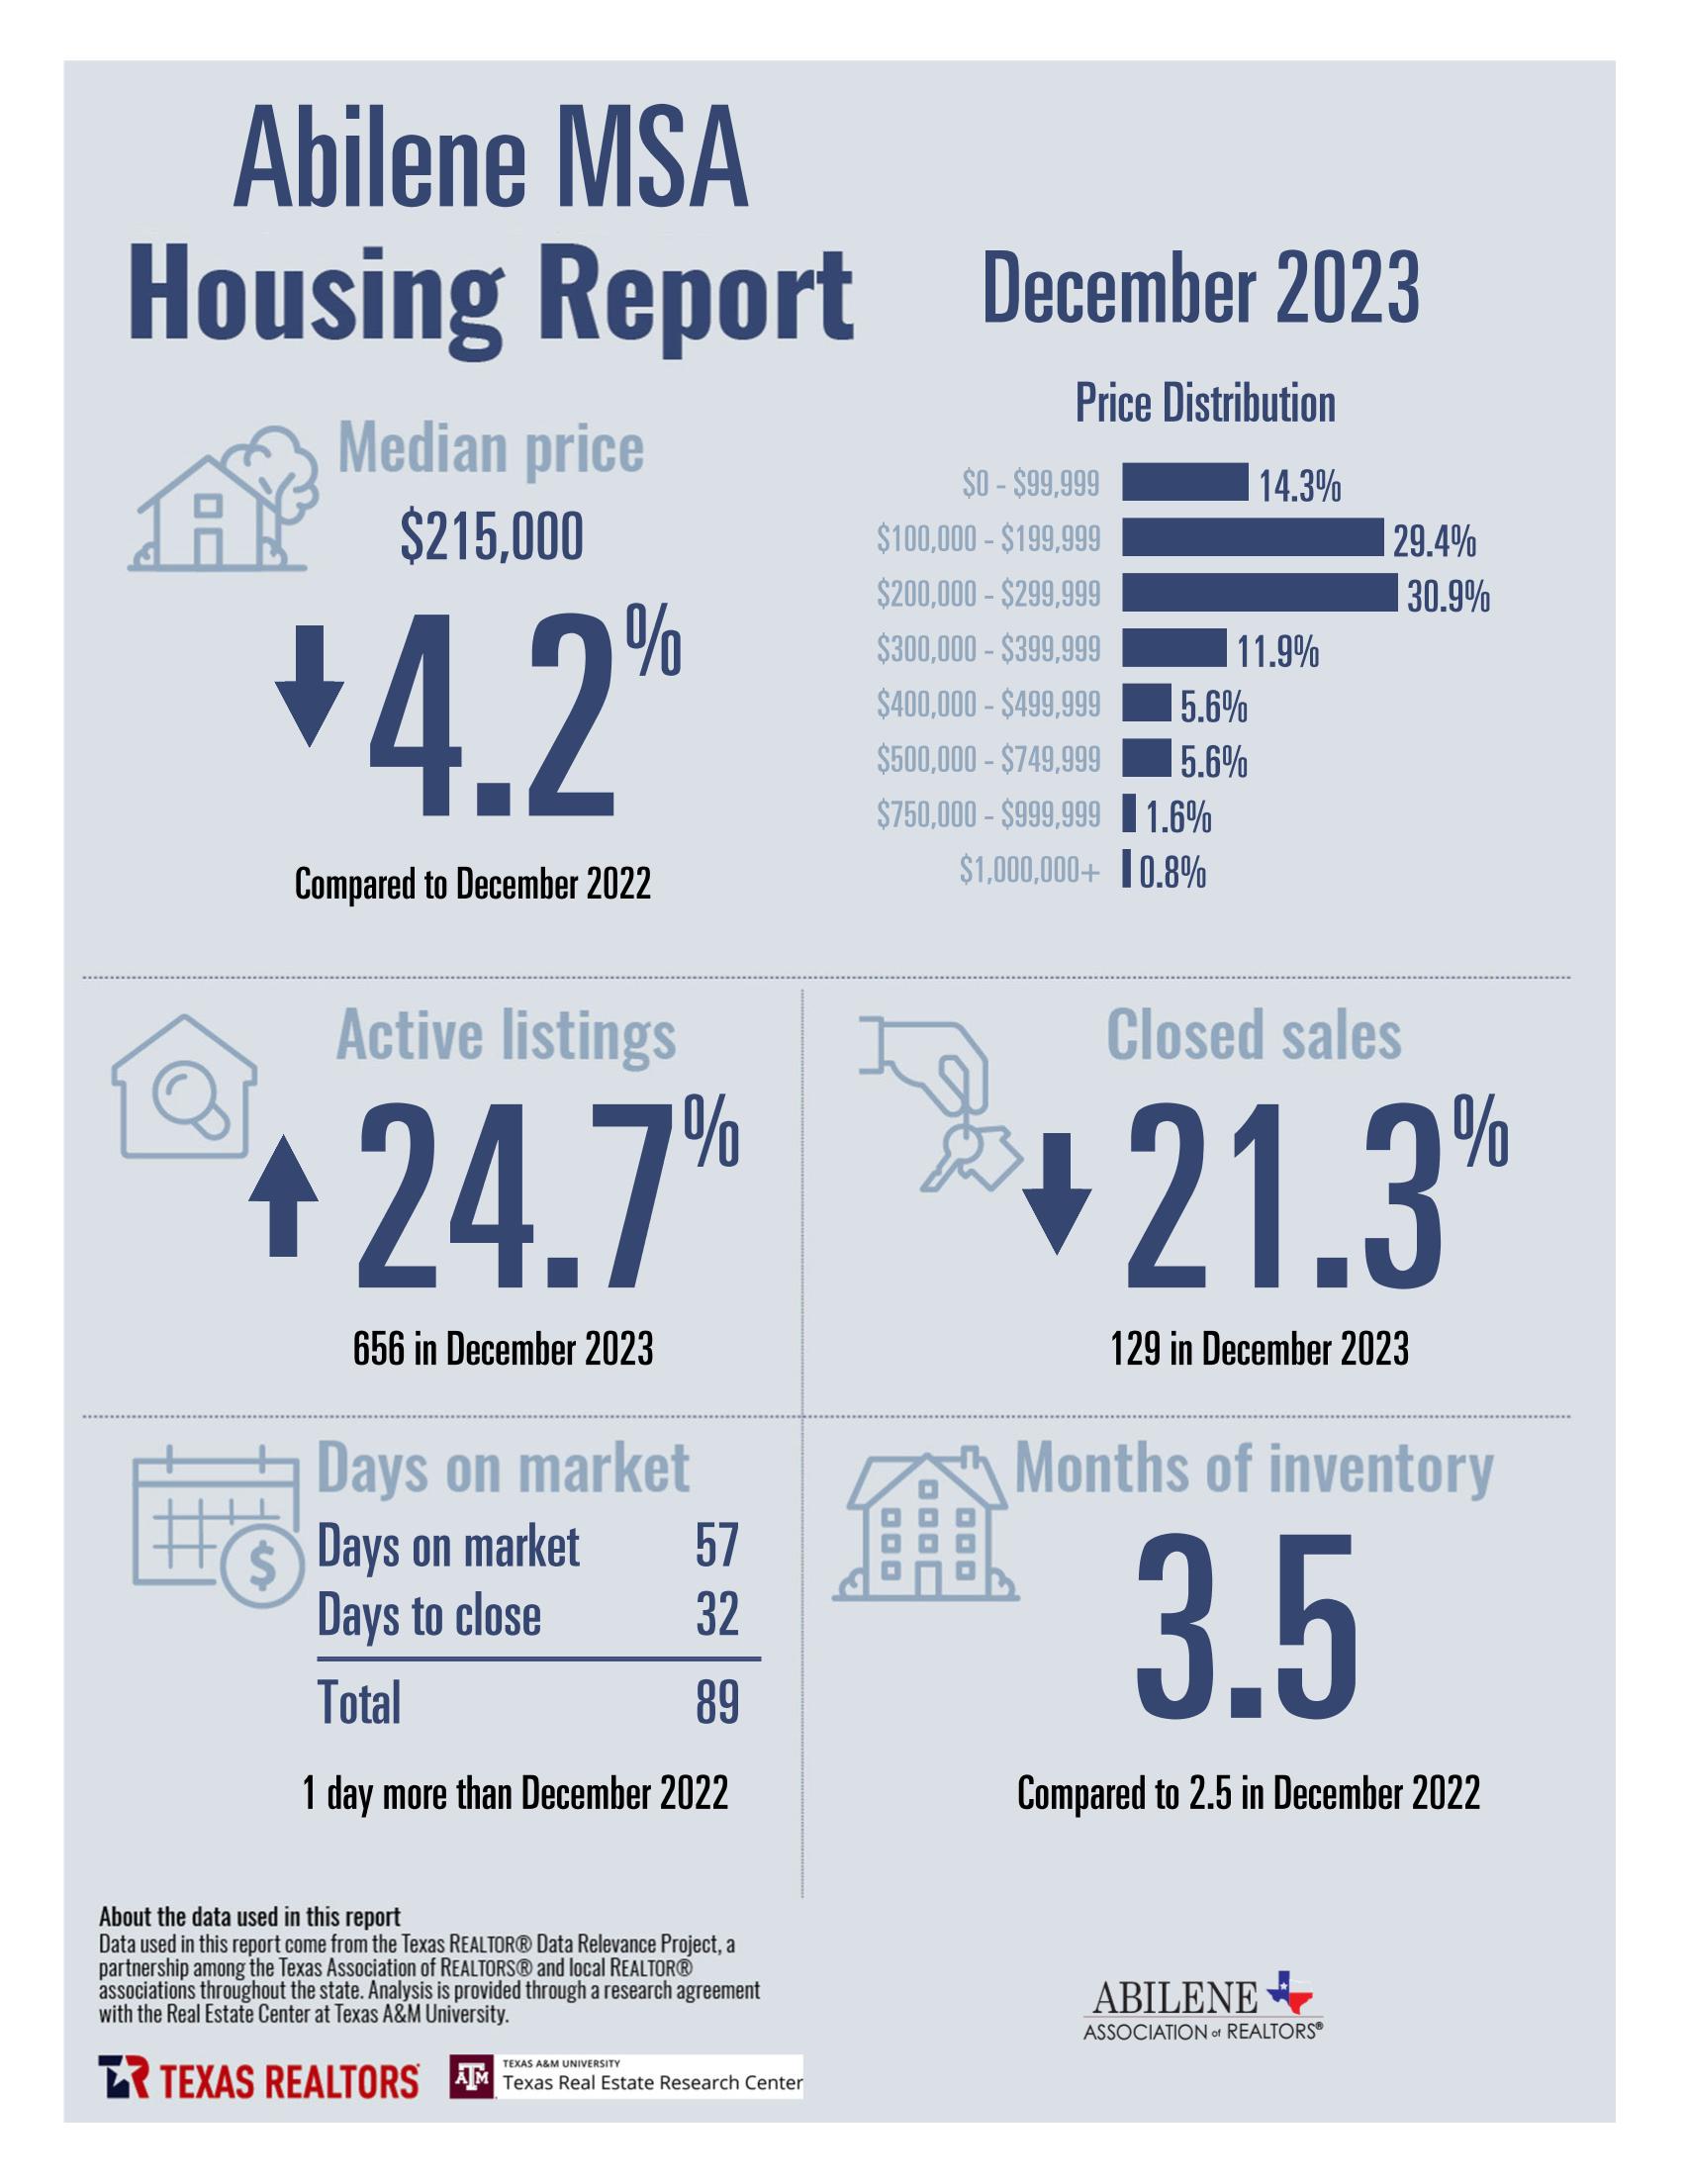 December 2023 Housing Statistics for Abilene, TX